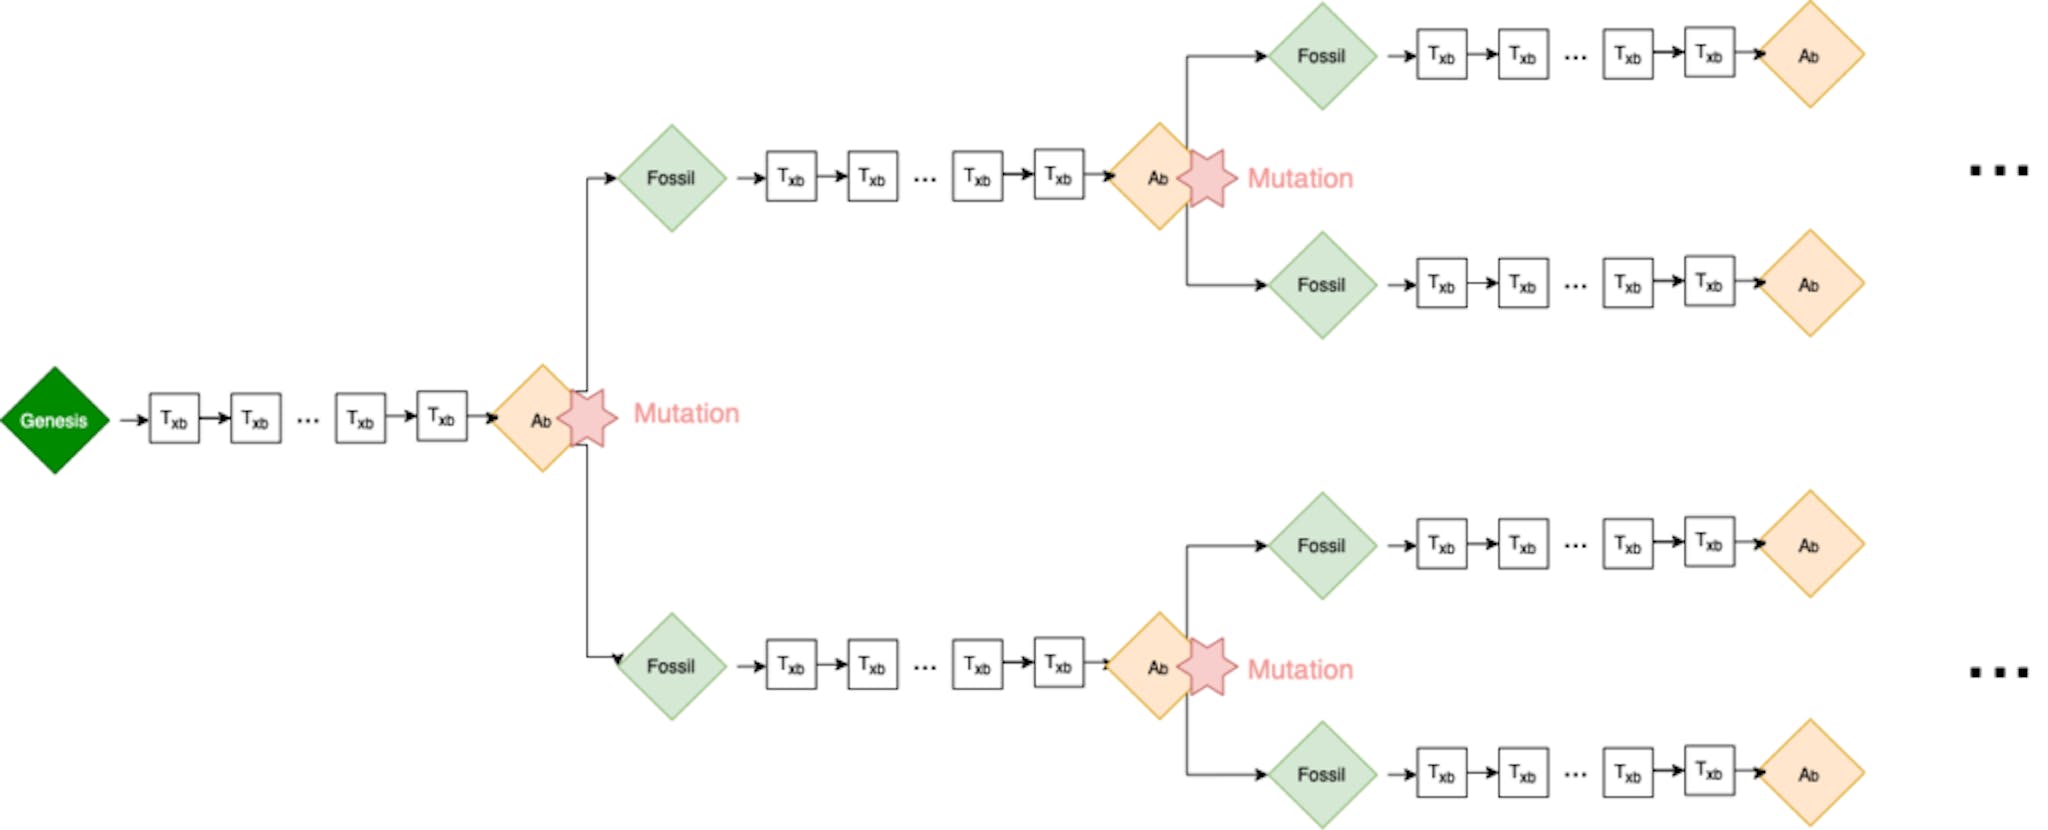 Fig. 4: Representación de la mutación en la Cadena de Darwin a medida que aumenta el número de nodos completos y realizan transacciones entre ellos. El Fossil Block que se muestra aquí es el bloque de génesis de cada child chain.